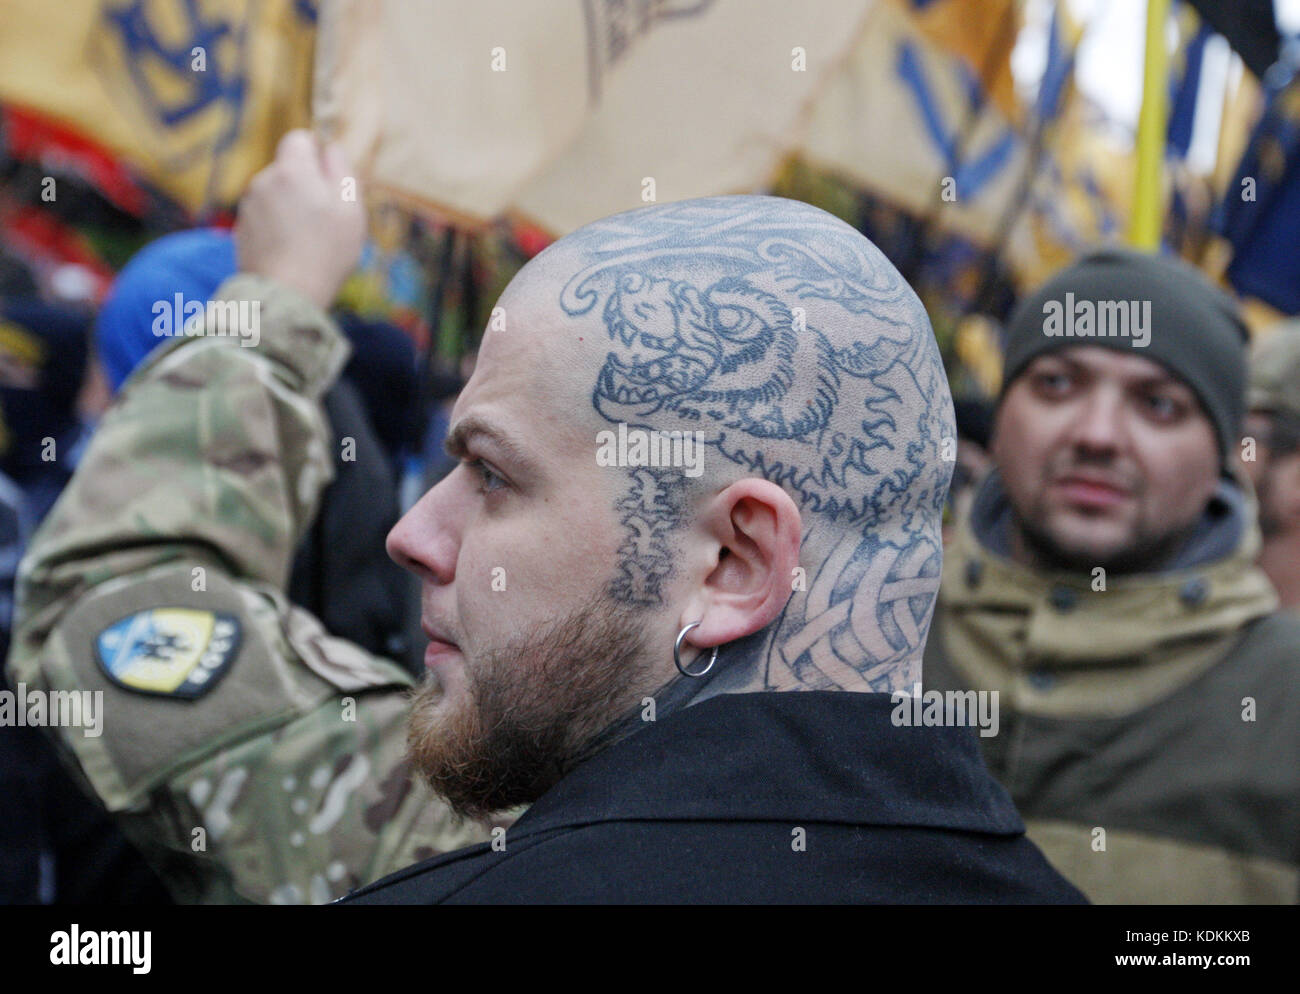 Укр щавший. Националисты Украины. Прически украинских националистов. Фашисты на Украине. Украинцы нацисты.